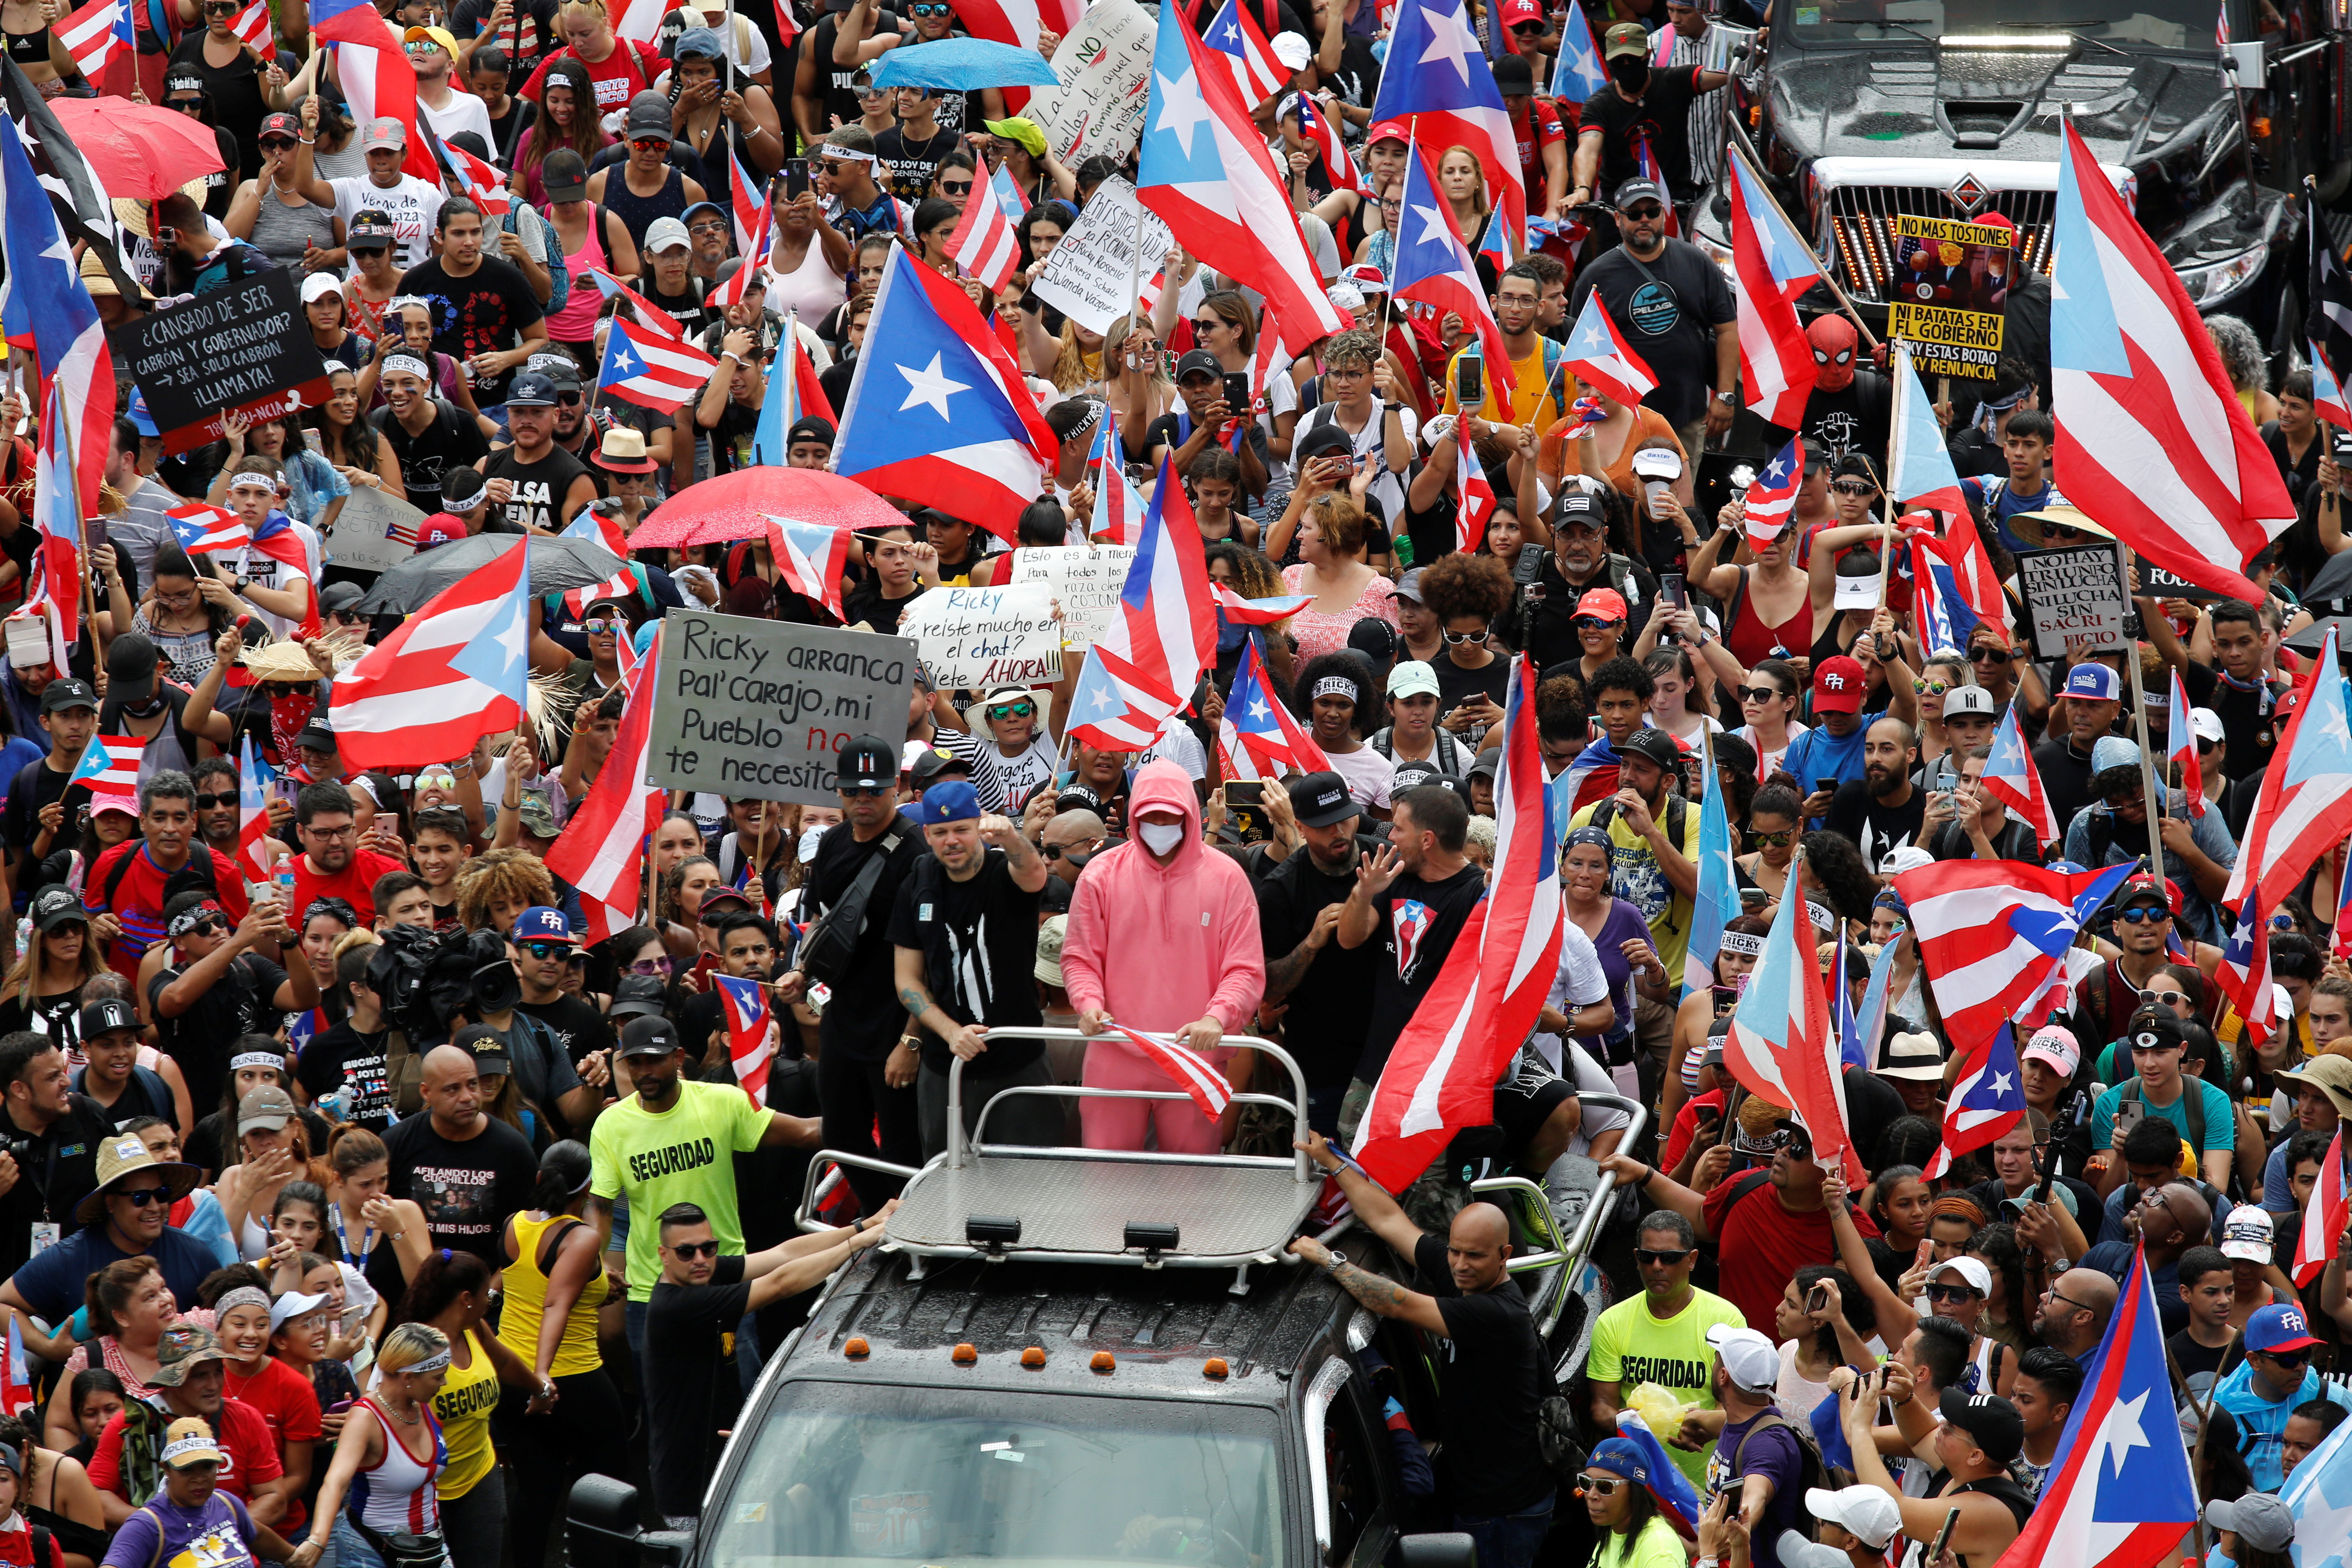 Las protestas creativas en Puerto Rico: Cantar, bucear, perrear y rezar